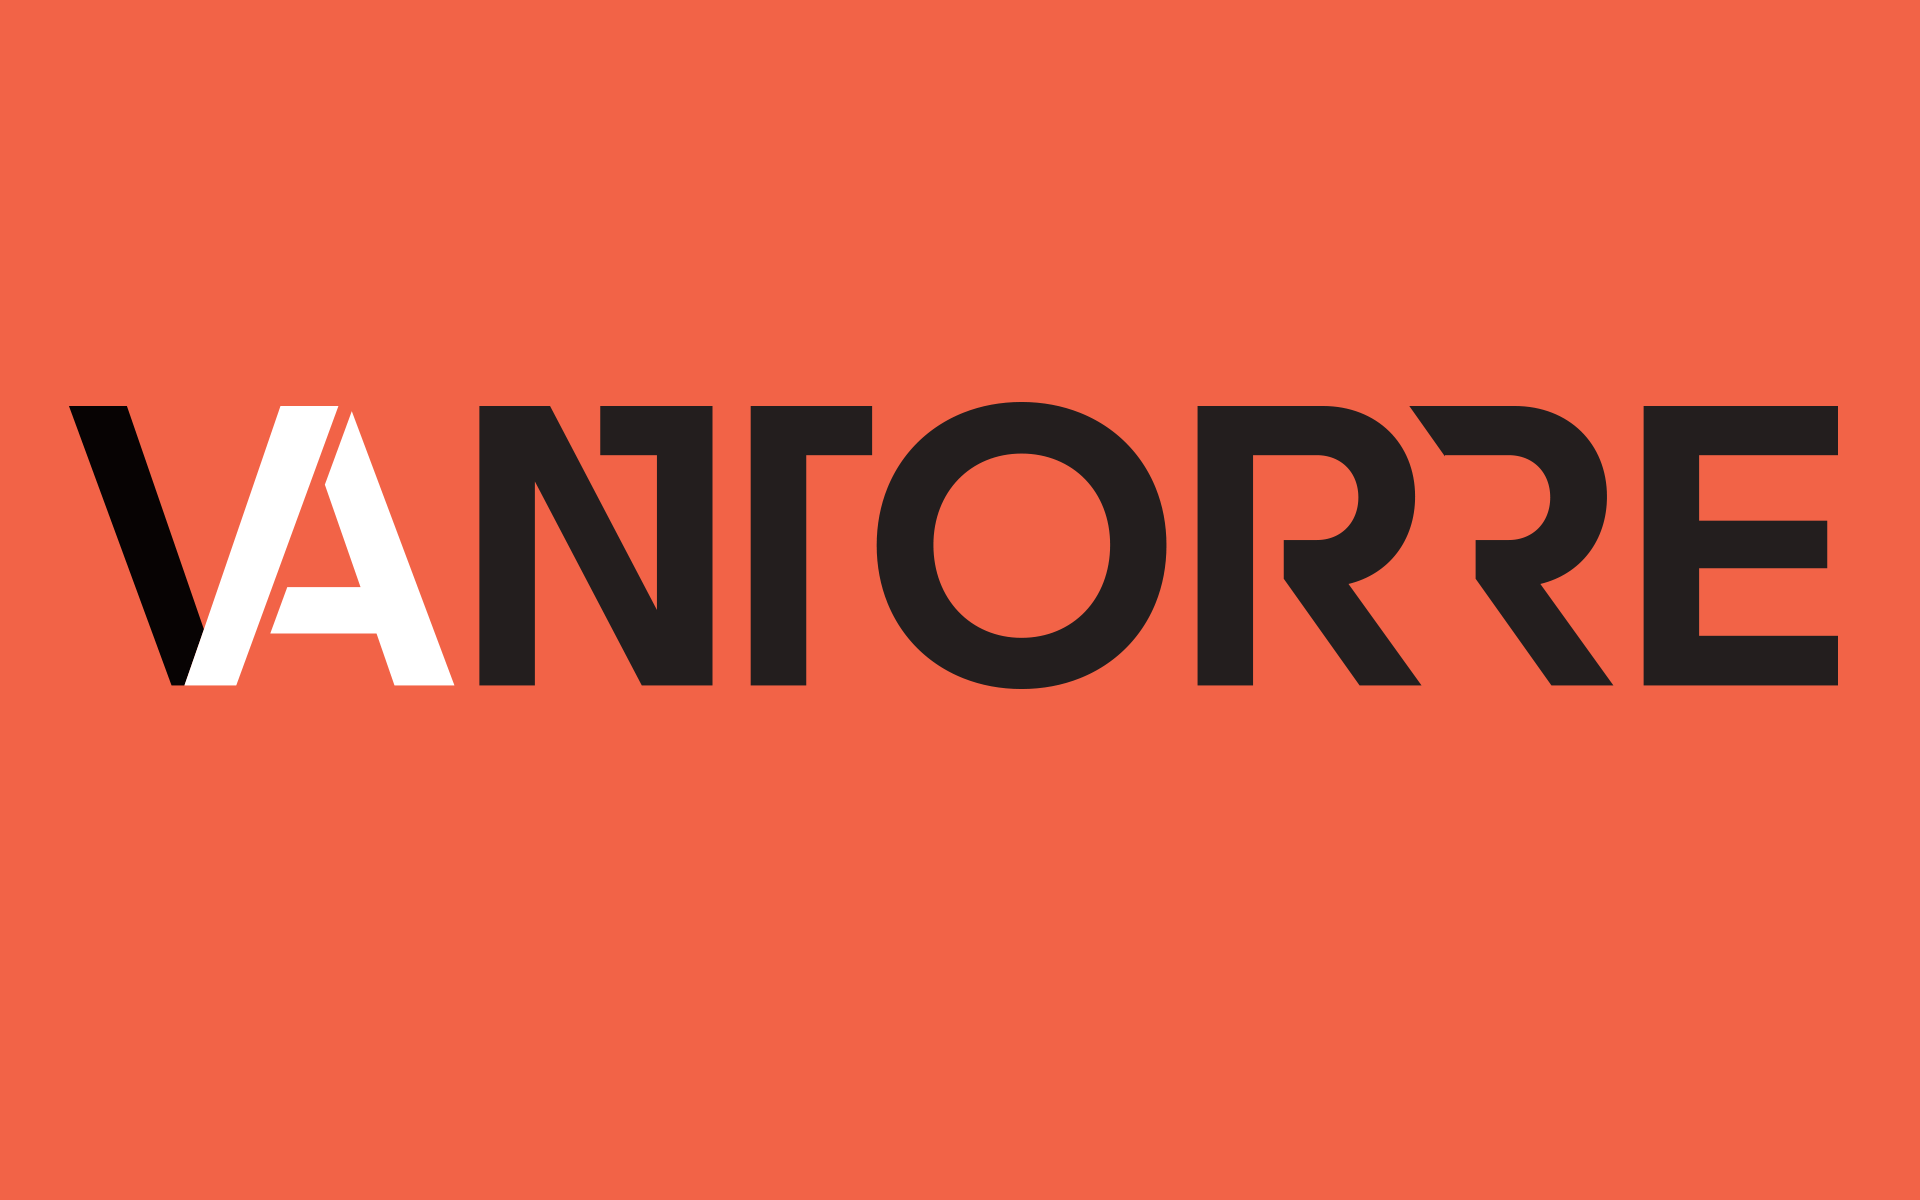 Andreas Vantorre, Logotype, Wortmarke